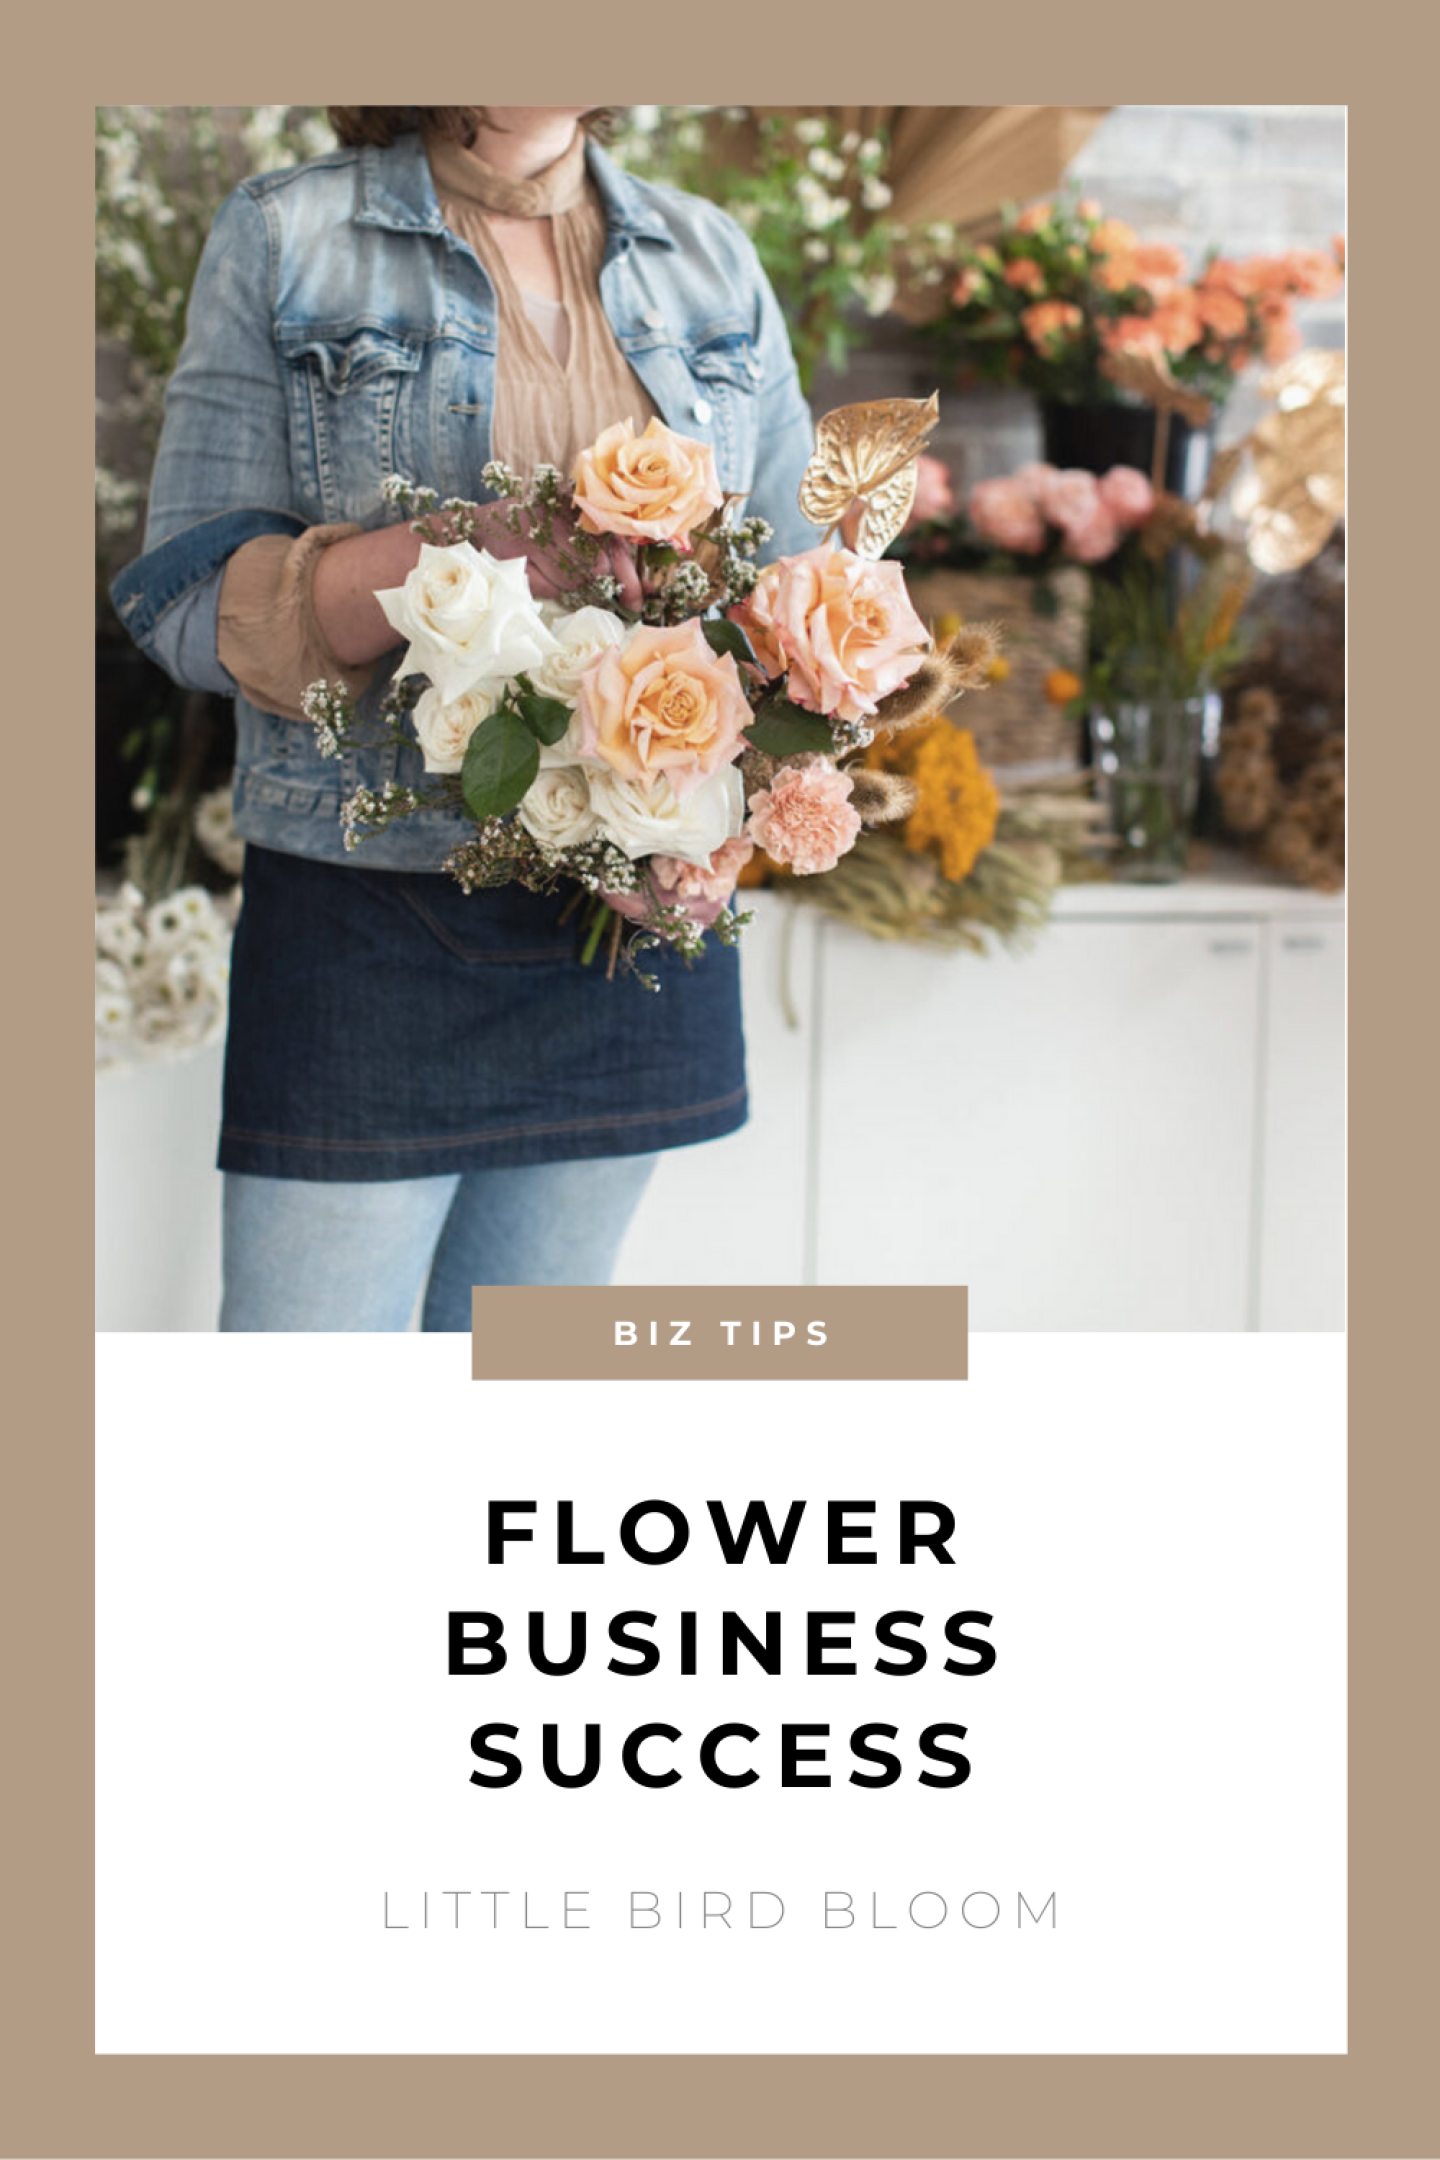 FLOWER BUSINESS